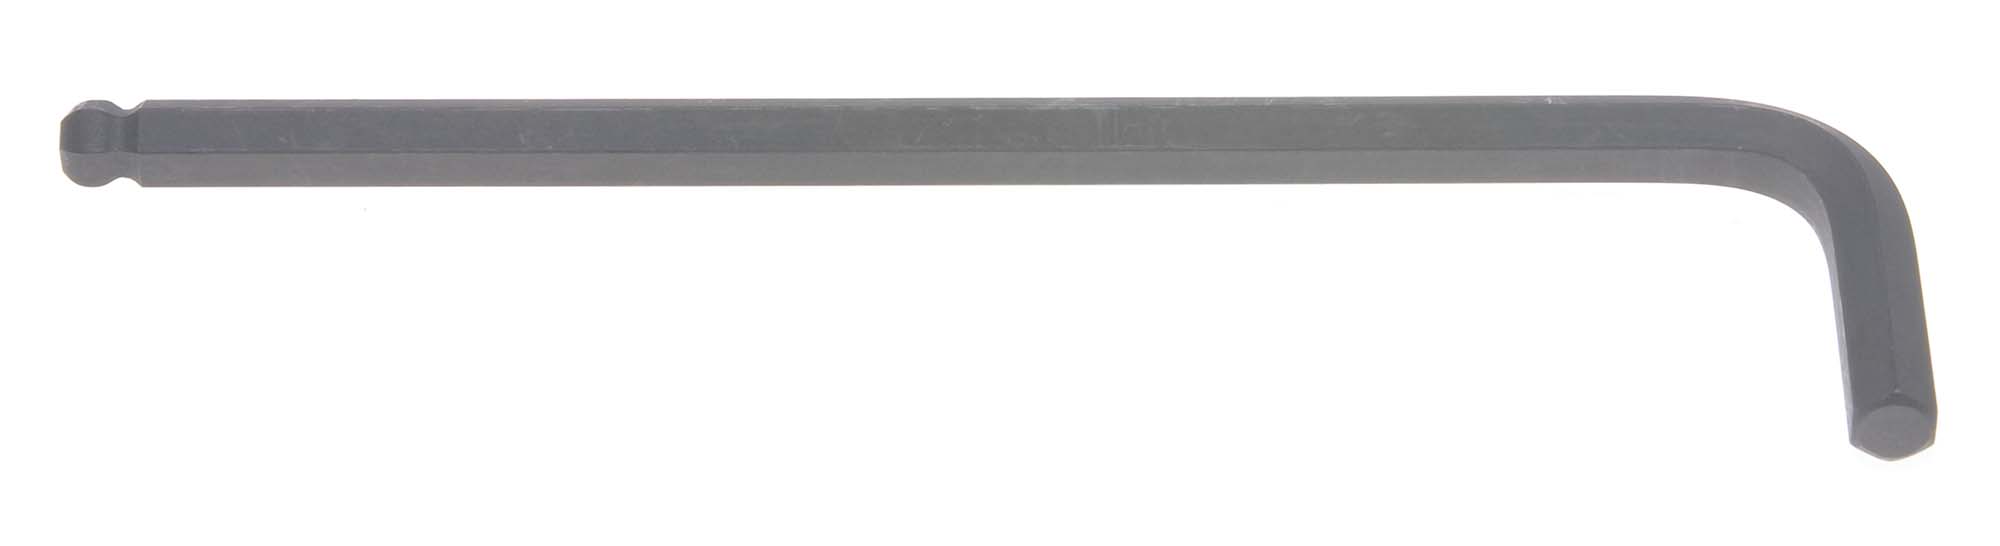 Bondhus 10986 17mm Balldriver L-Wrench Hex Key